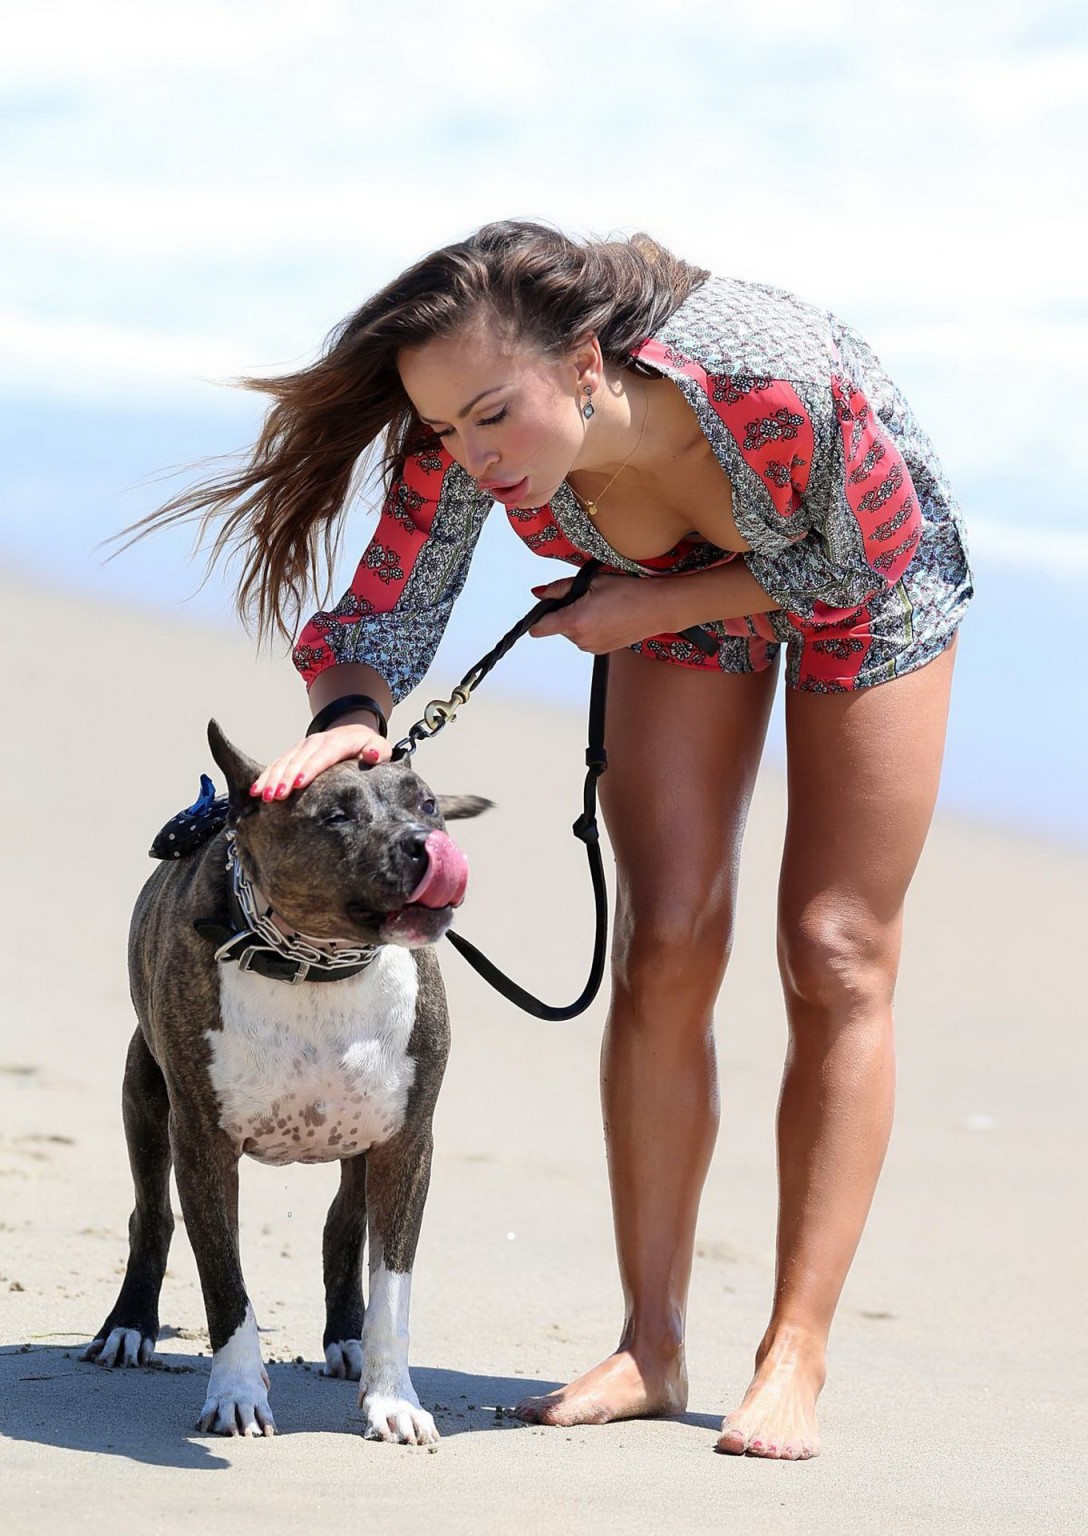 Karina Smirnoff looks hot in a skimpy blue bikini at the beach in Malibu #75163633